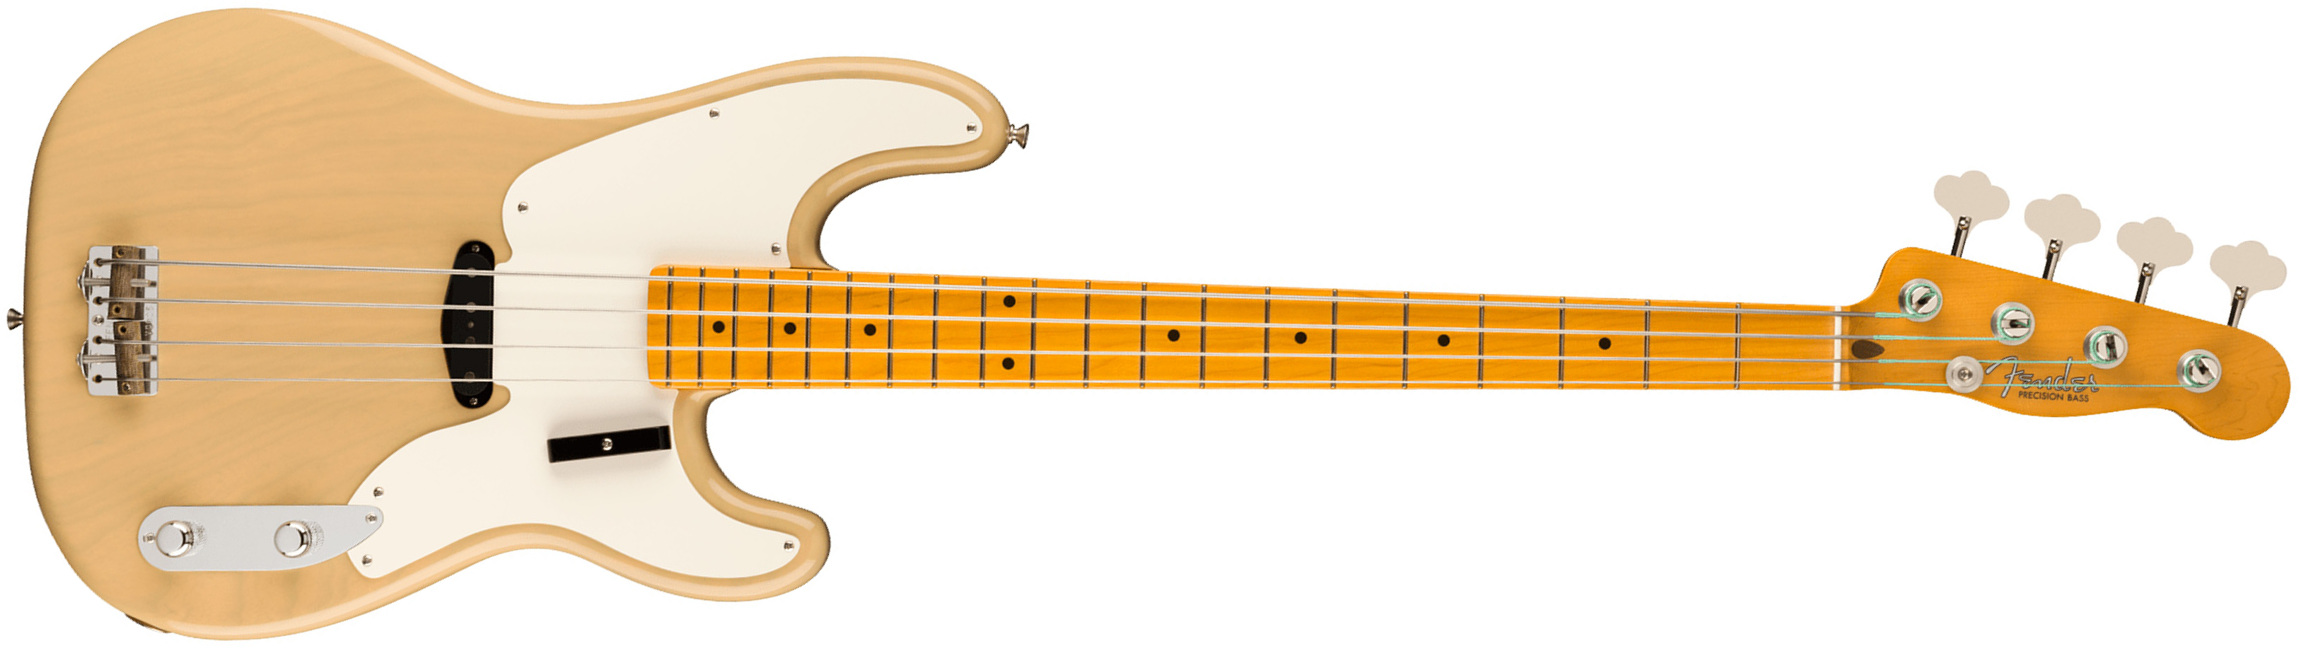 Fender Precision Bass 1954 American Vintage Ii Usa Mn - Vintage Blonde - Bajo eléctrico de cuerpo sólido - Main picture